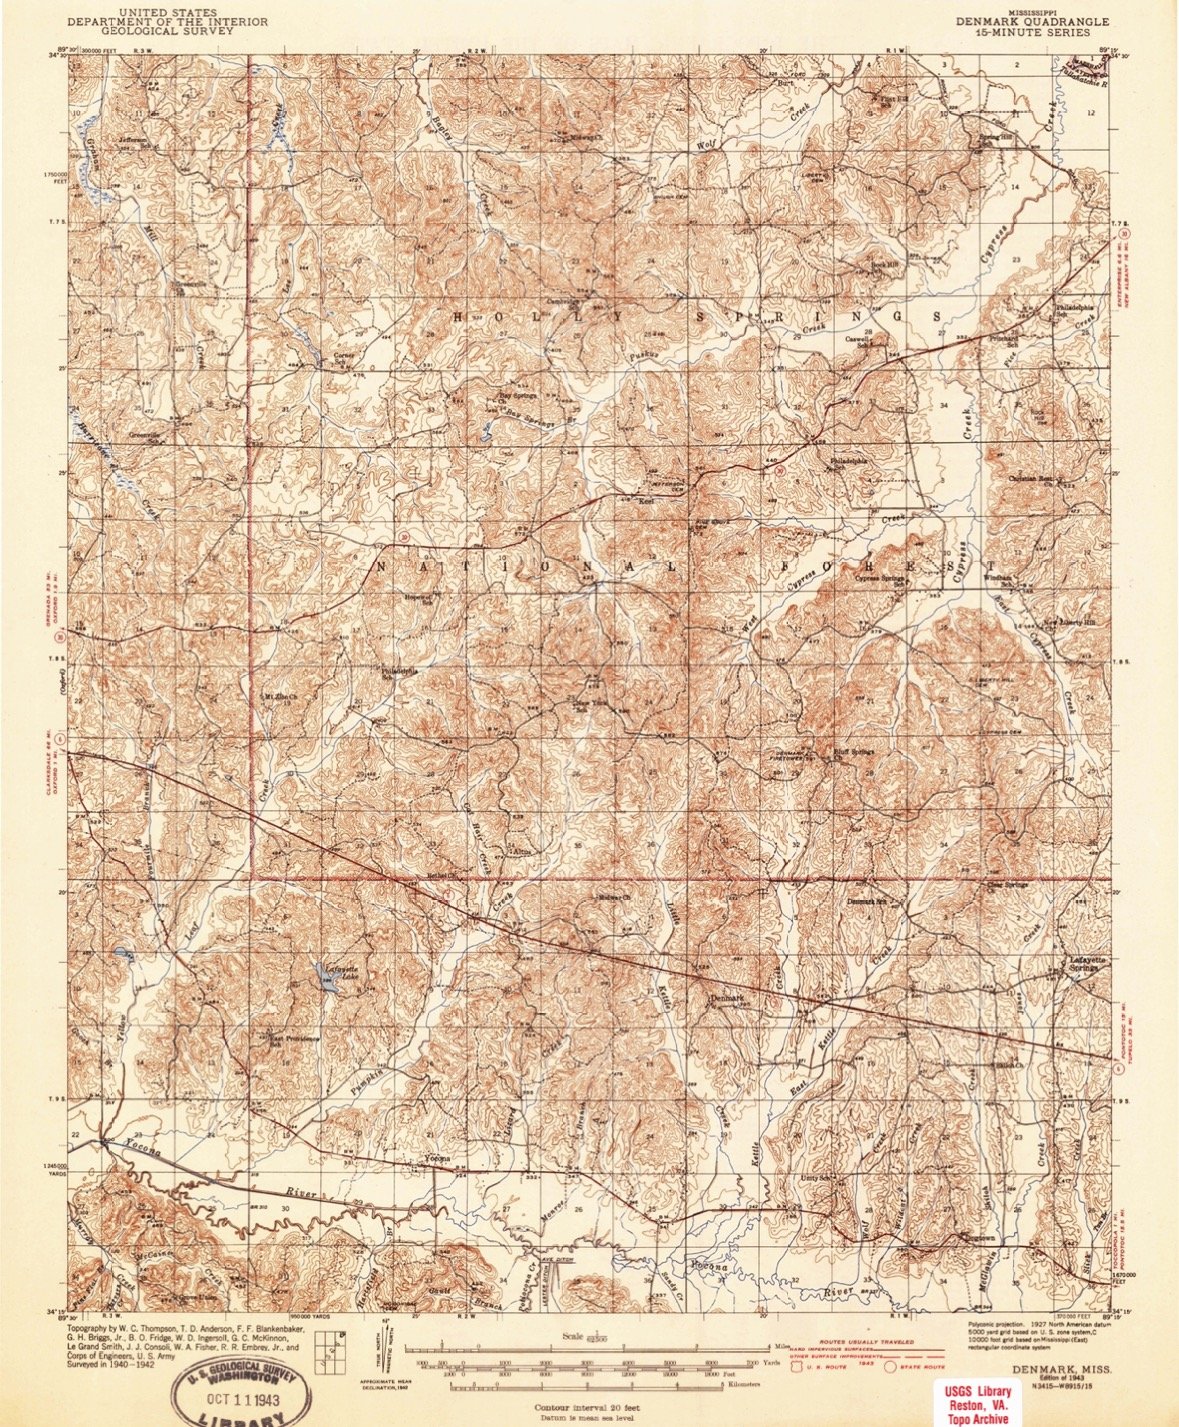 USGS 1943.jpg